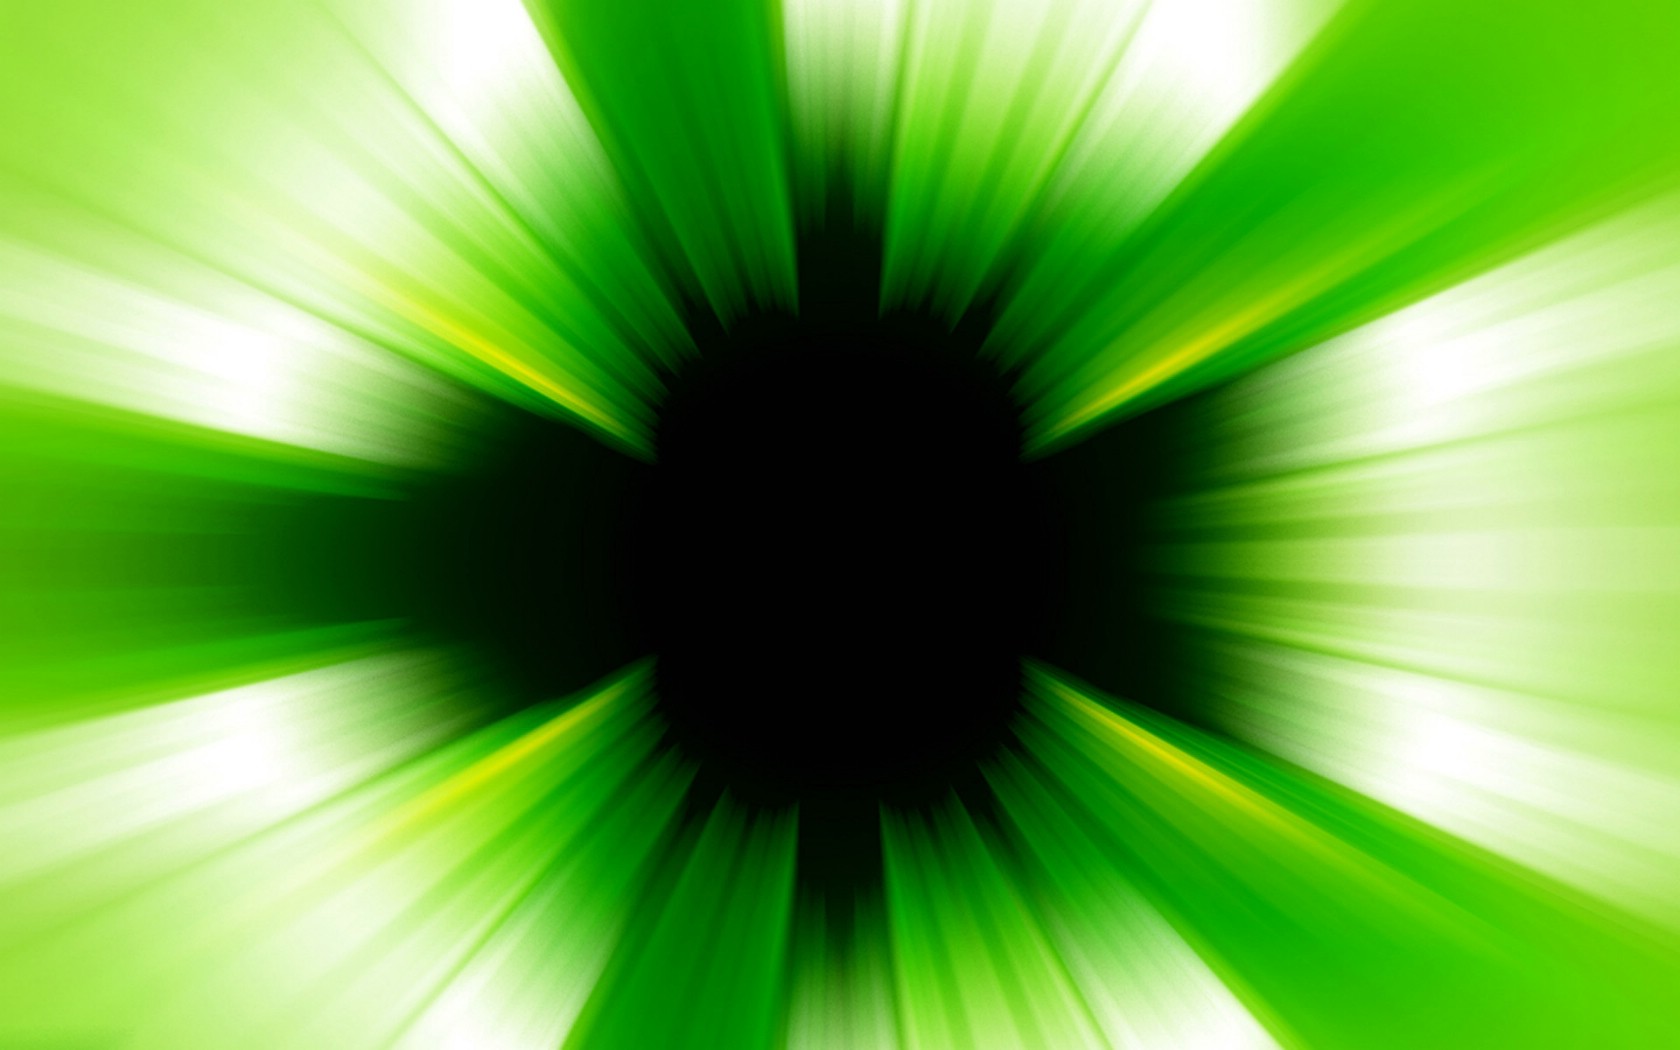 壁纸1680x1050PS效果绿色光线壁纸 PS效果绿色光线壁纸 PS效果绿色光线图片 PS效果绿色光线素材 创意壁纸 创意图库 创意图片素材桌面壁纸